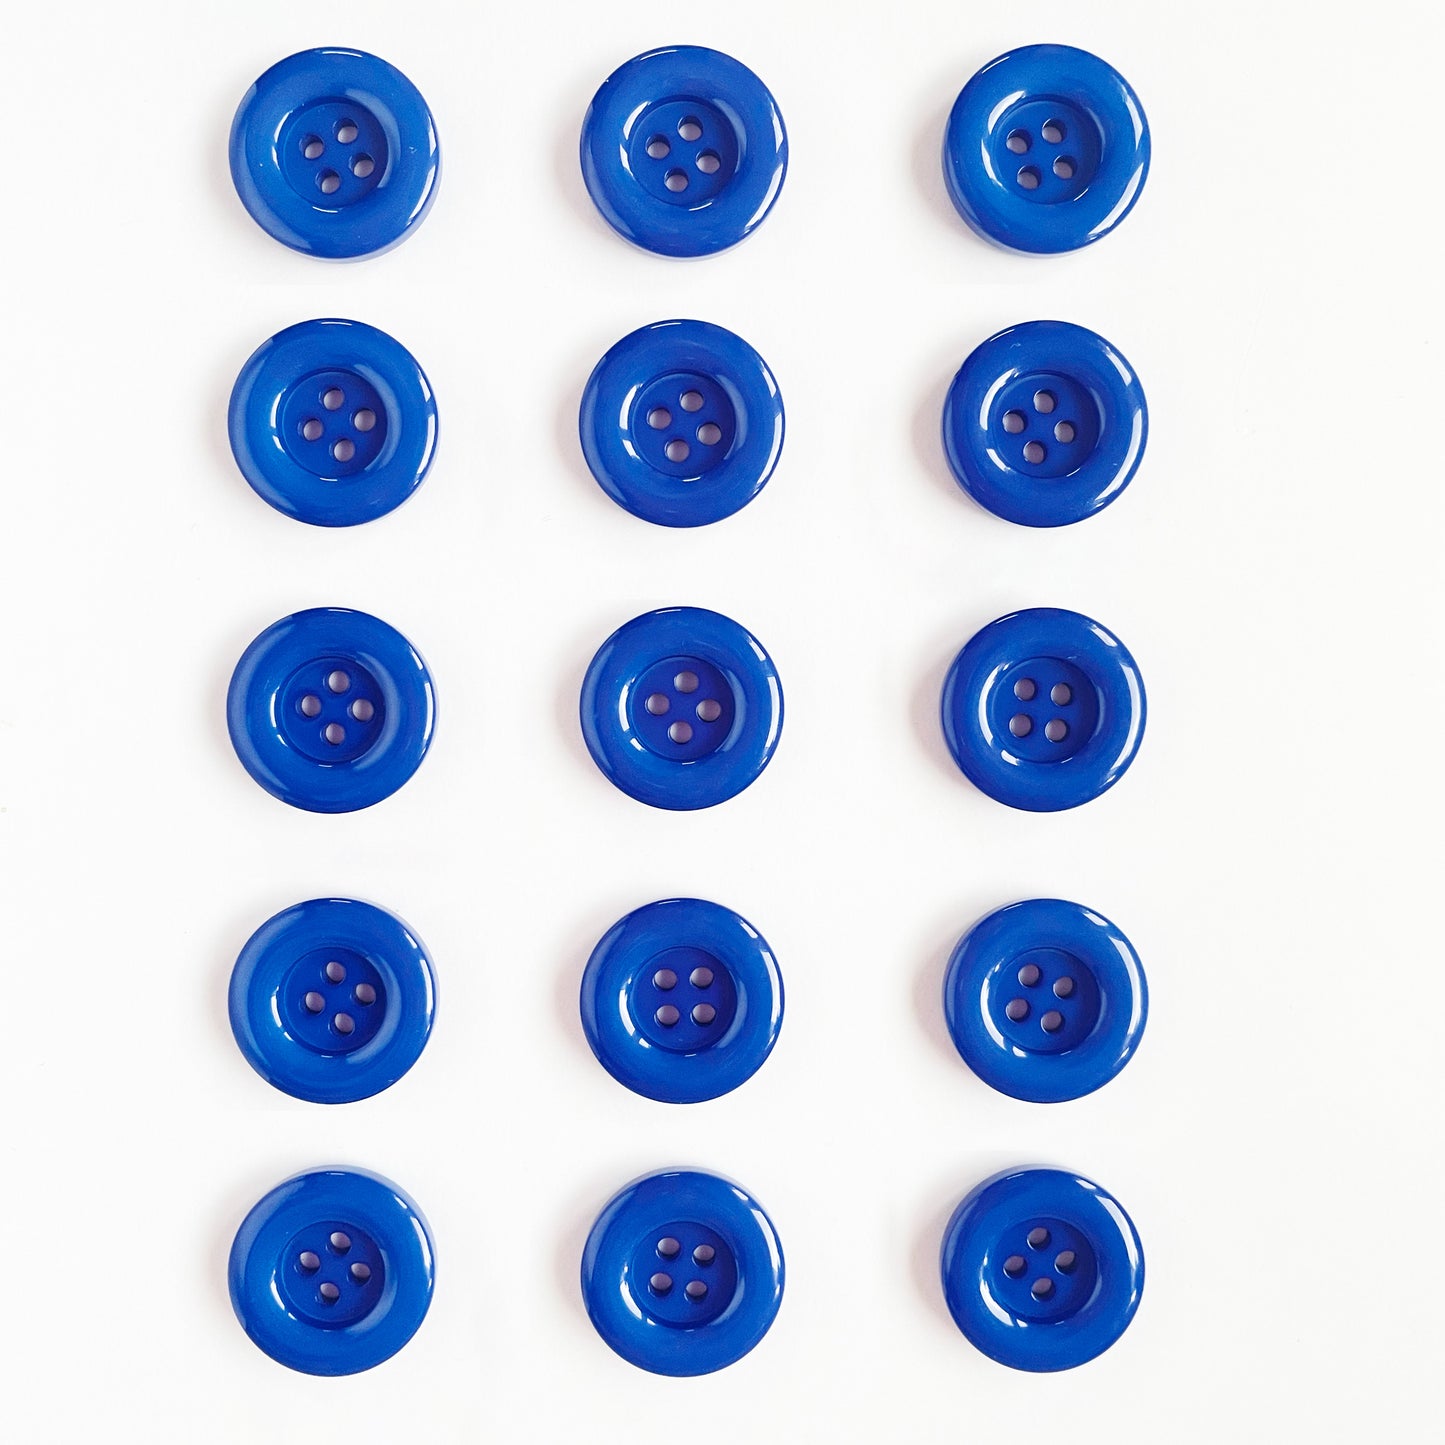 Deluxe Ressourcen für "Patchwork®" Knöpfe blau buttons blue